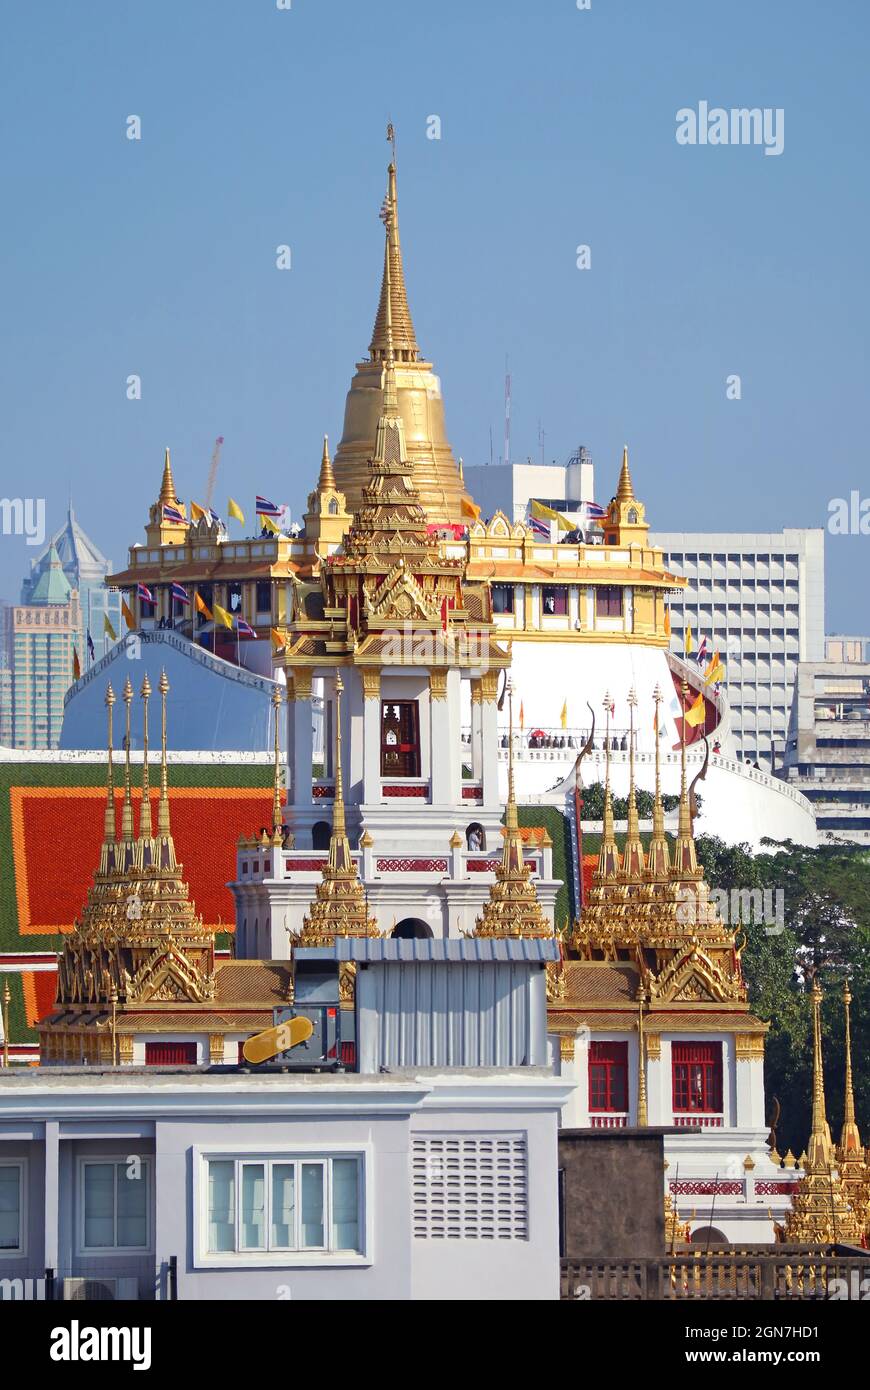 Vue imprenable sur Phu Khao Thong (Mont d'Or) avec le sommet de Loha Prasat (Château de fer) à Foreground, Bangkok, Thaïlande Banque D'Images